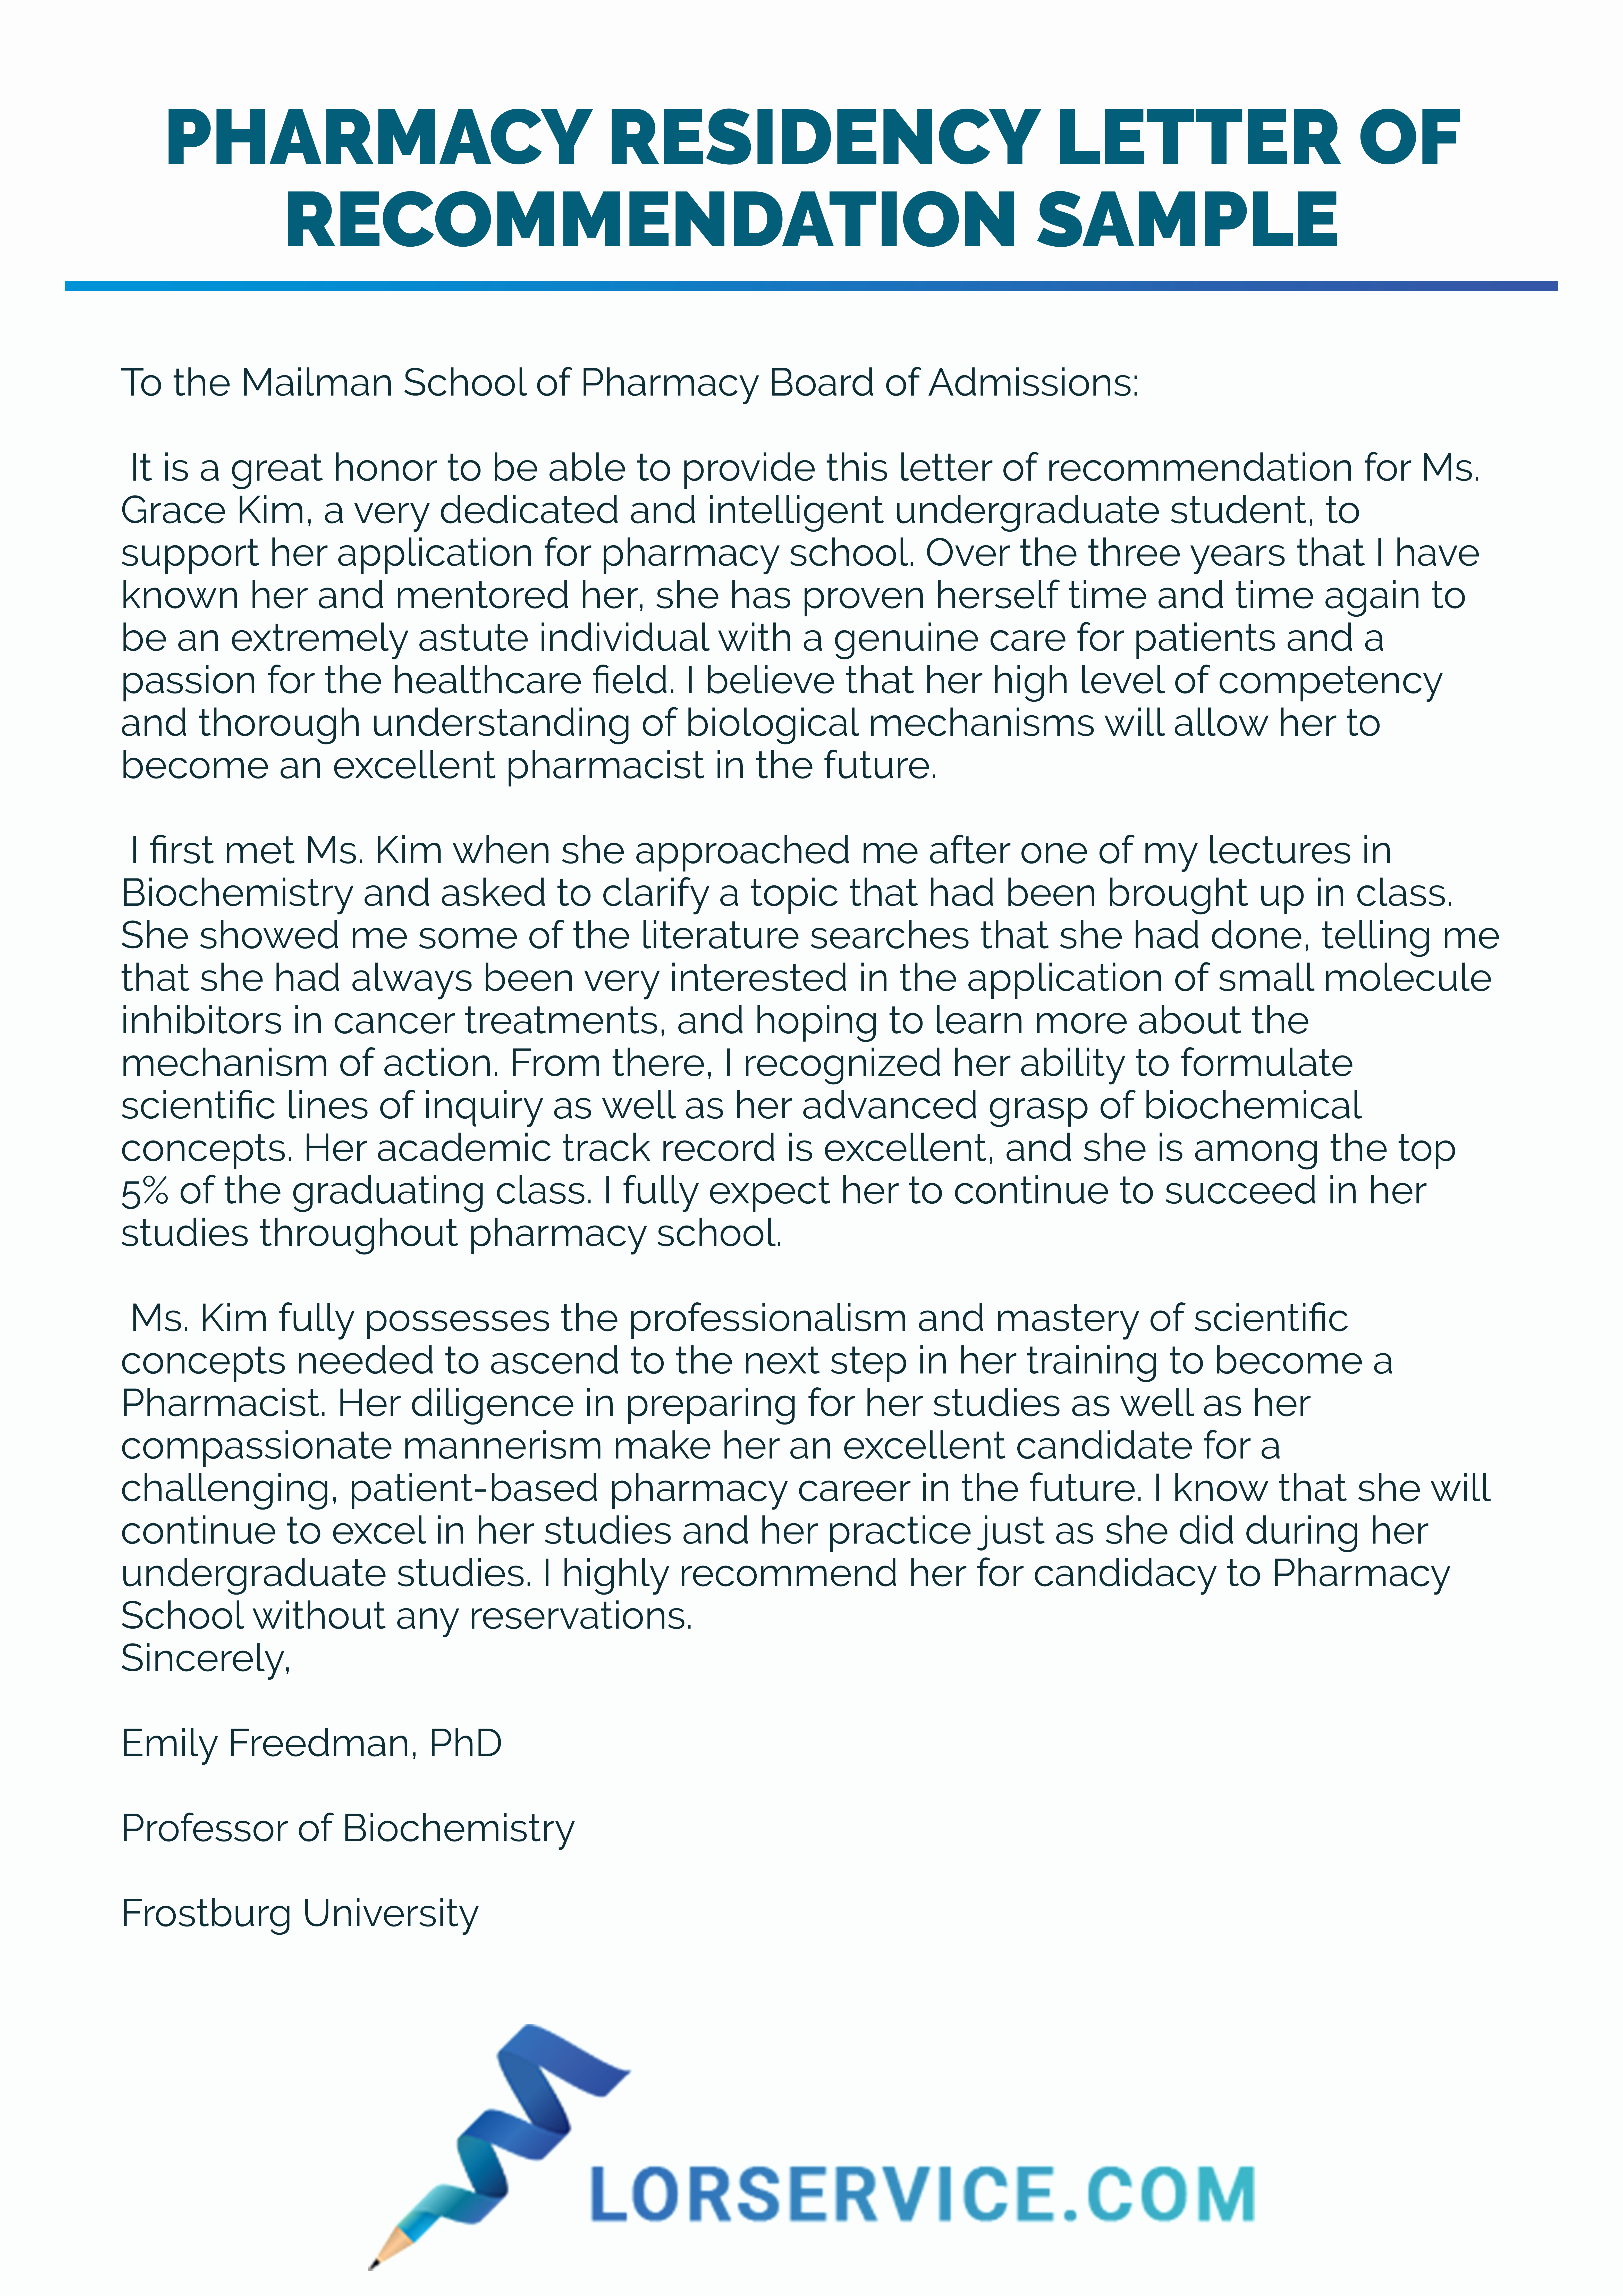 Pharmacist Letter Of Recommendation Sample New Pharmacy Re Mendation Letter